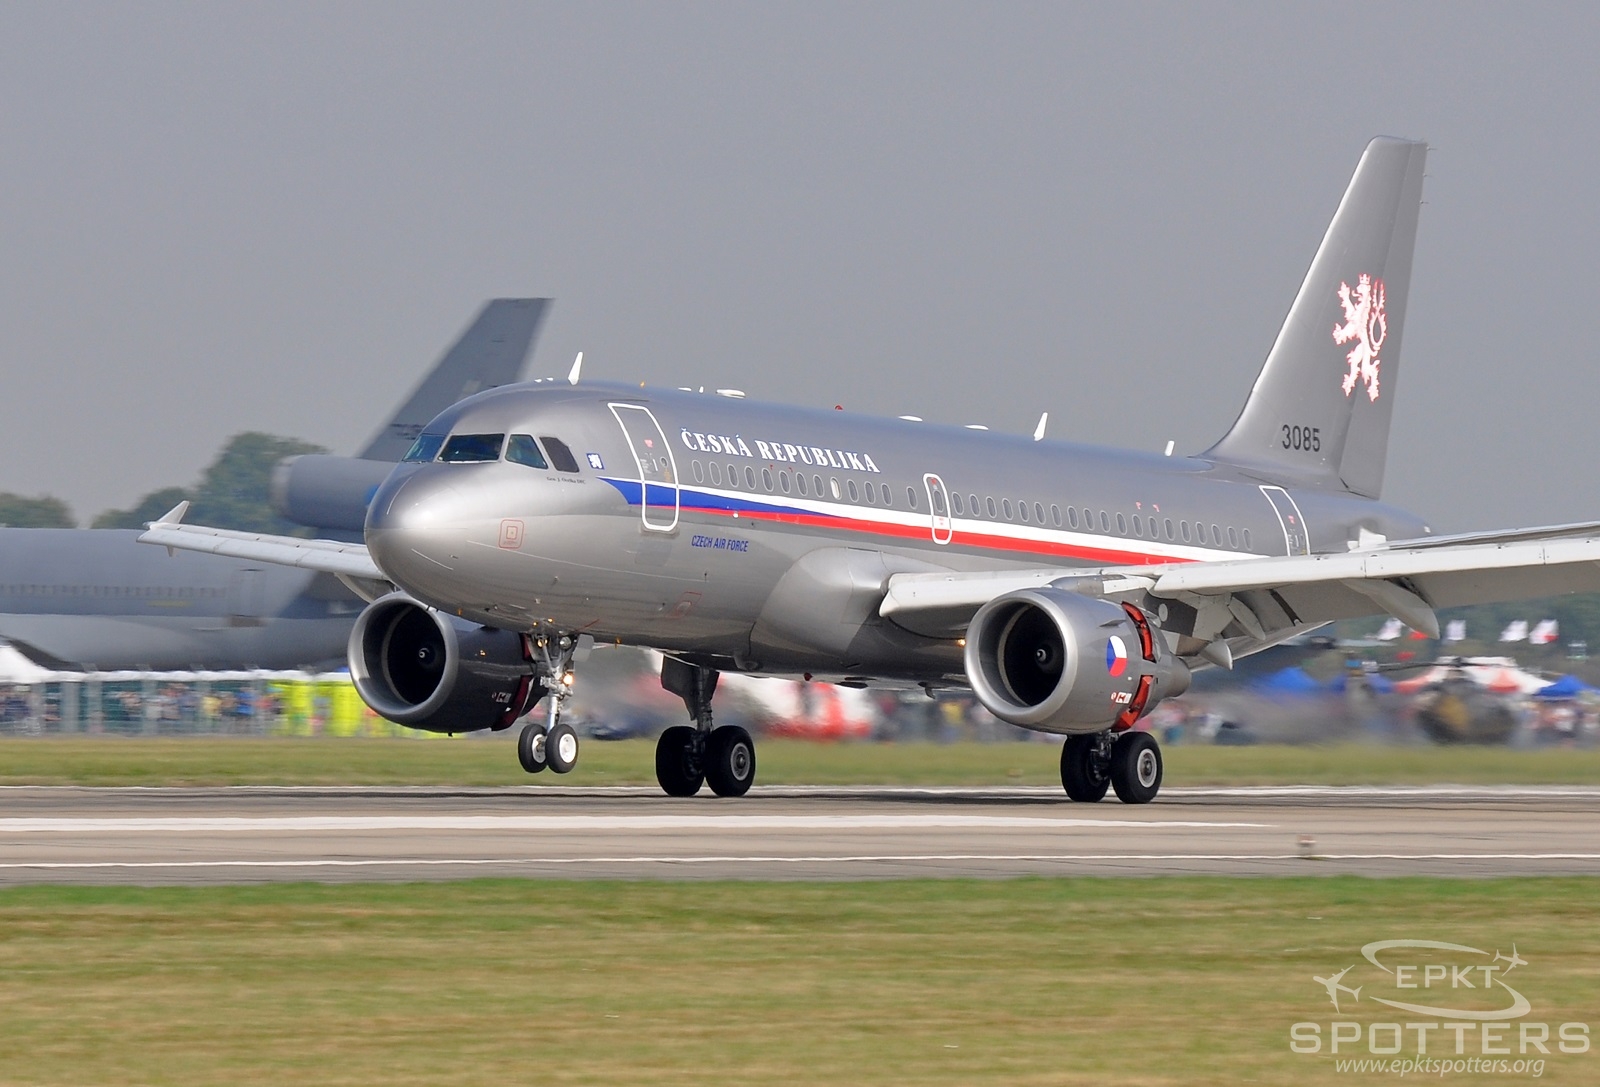 3085 - Airbus A319 -115X(CJ) (Czech Republic - Air Force) / Leos Janacek Airport - Ostrava Czech Republic [LKMT/OSR]